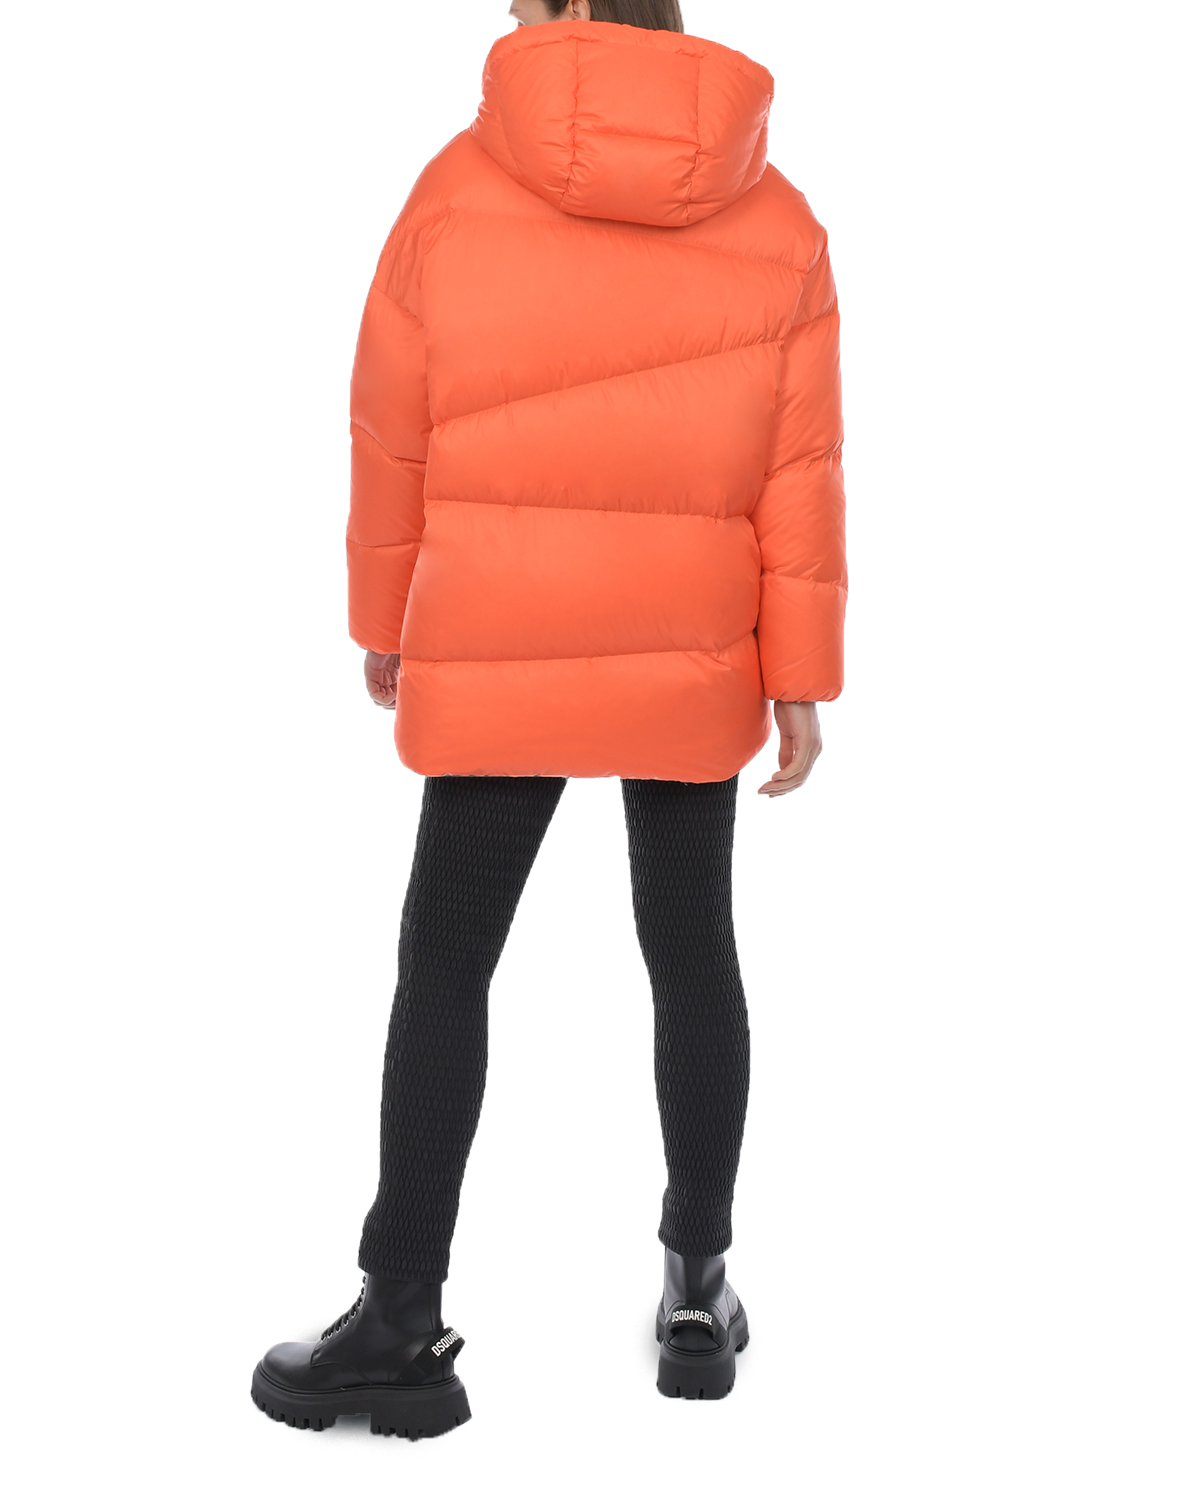 Удлиненная оранжевая куртка с капюшоном Naumi, размер 38, цвет оранжевый - фото 6